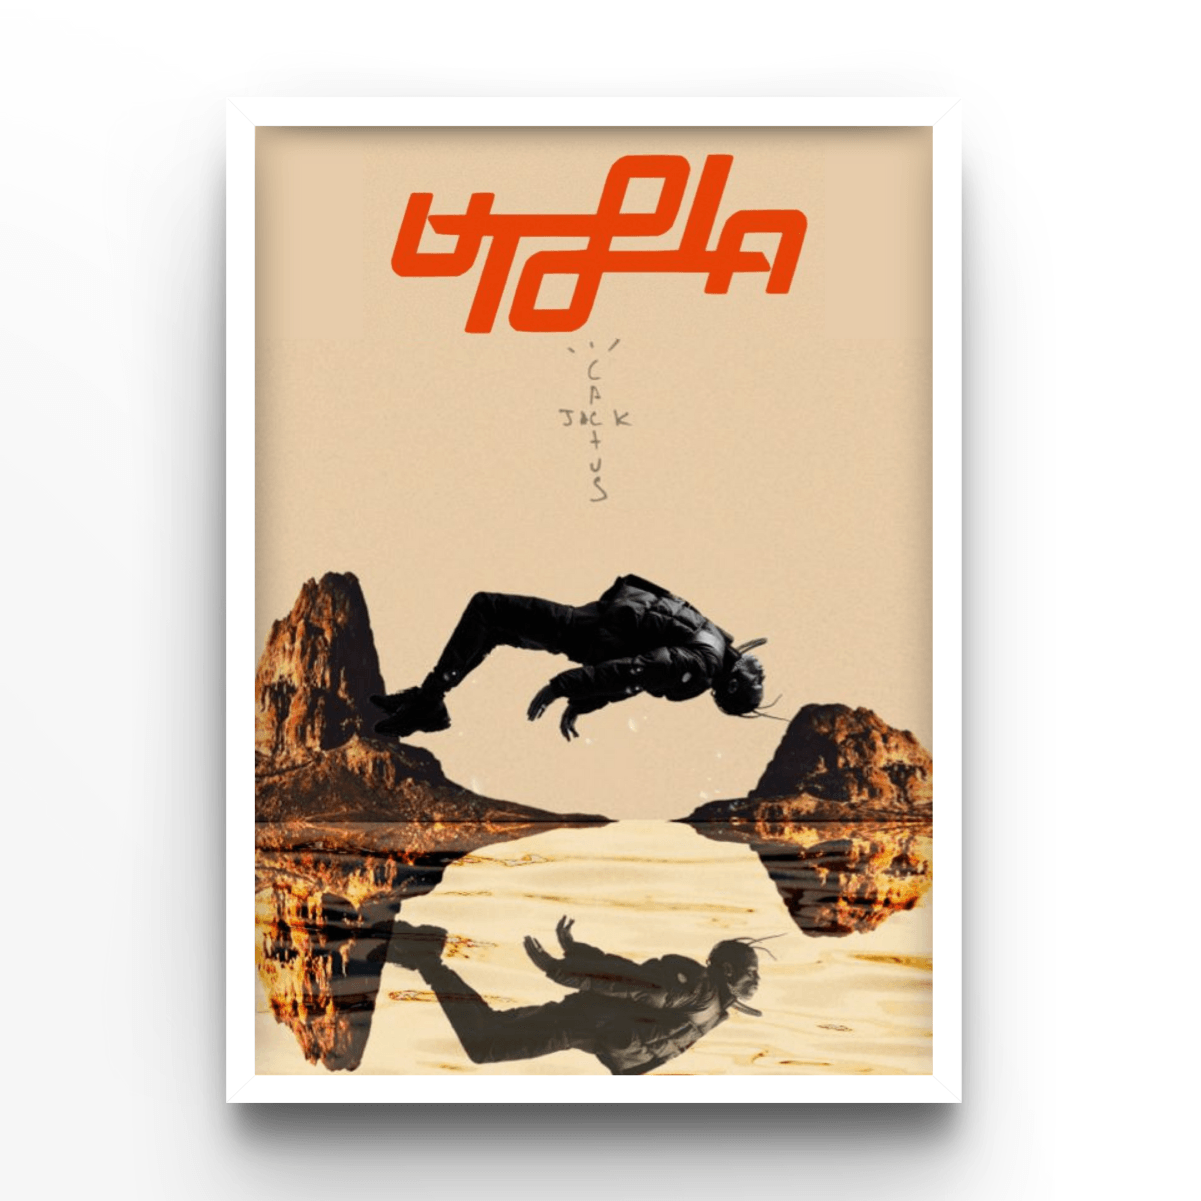 Travis Scott Utopia Cover - A4, A3, A2 Posters Base - Poster Print Shop / Art Prints / PostersBase